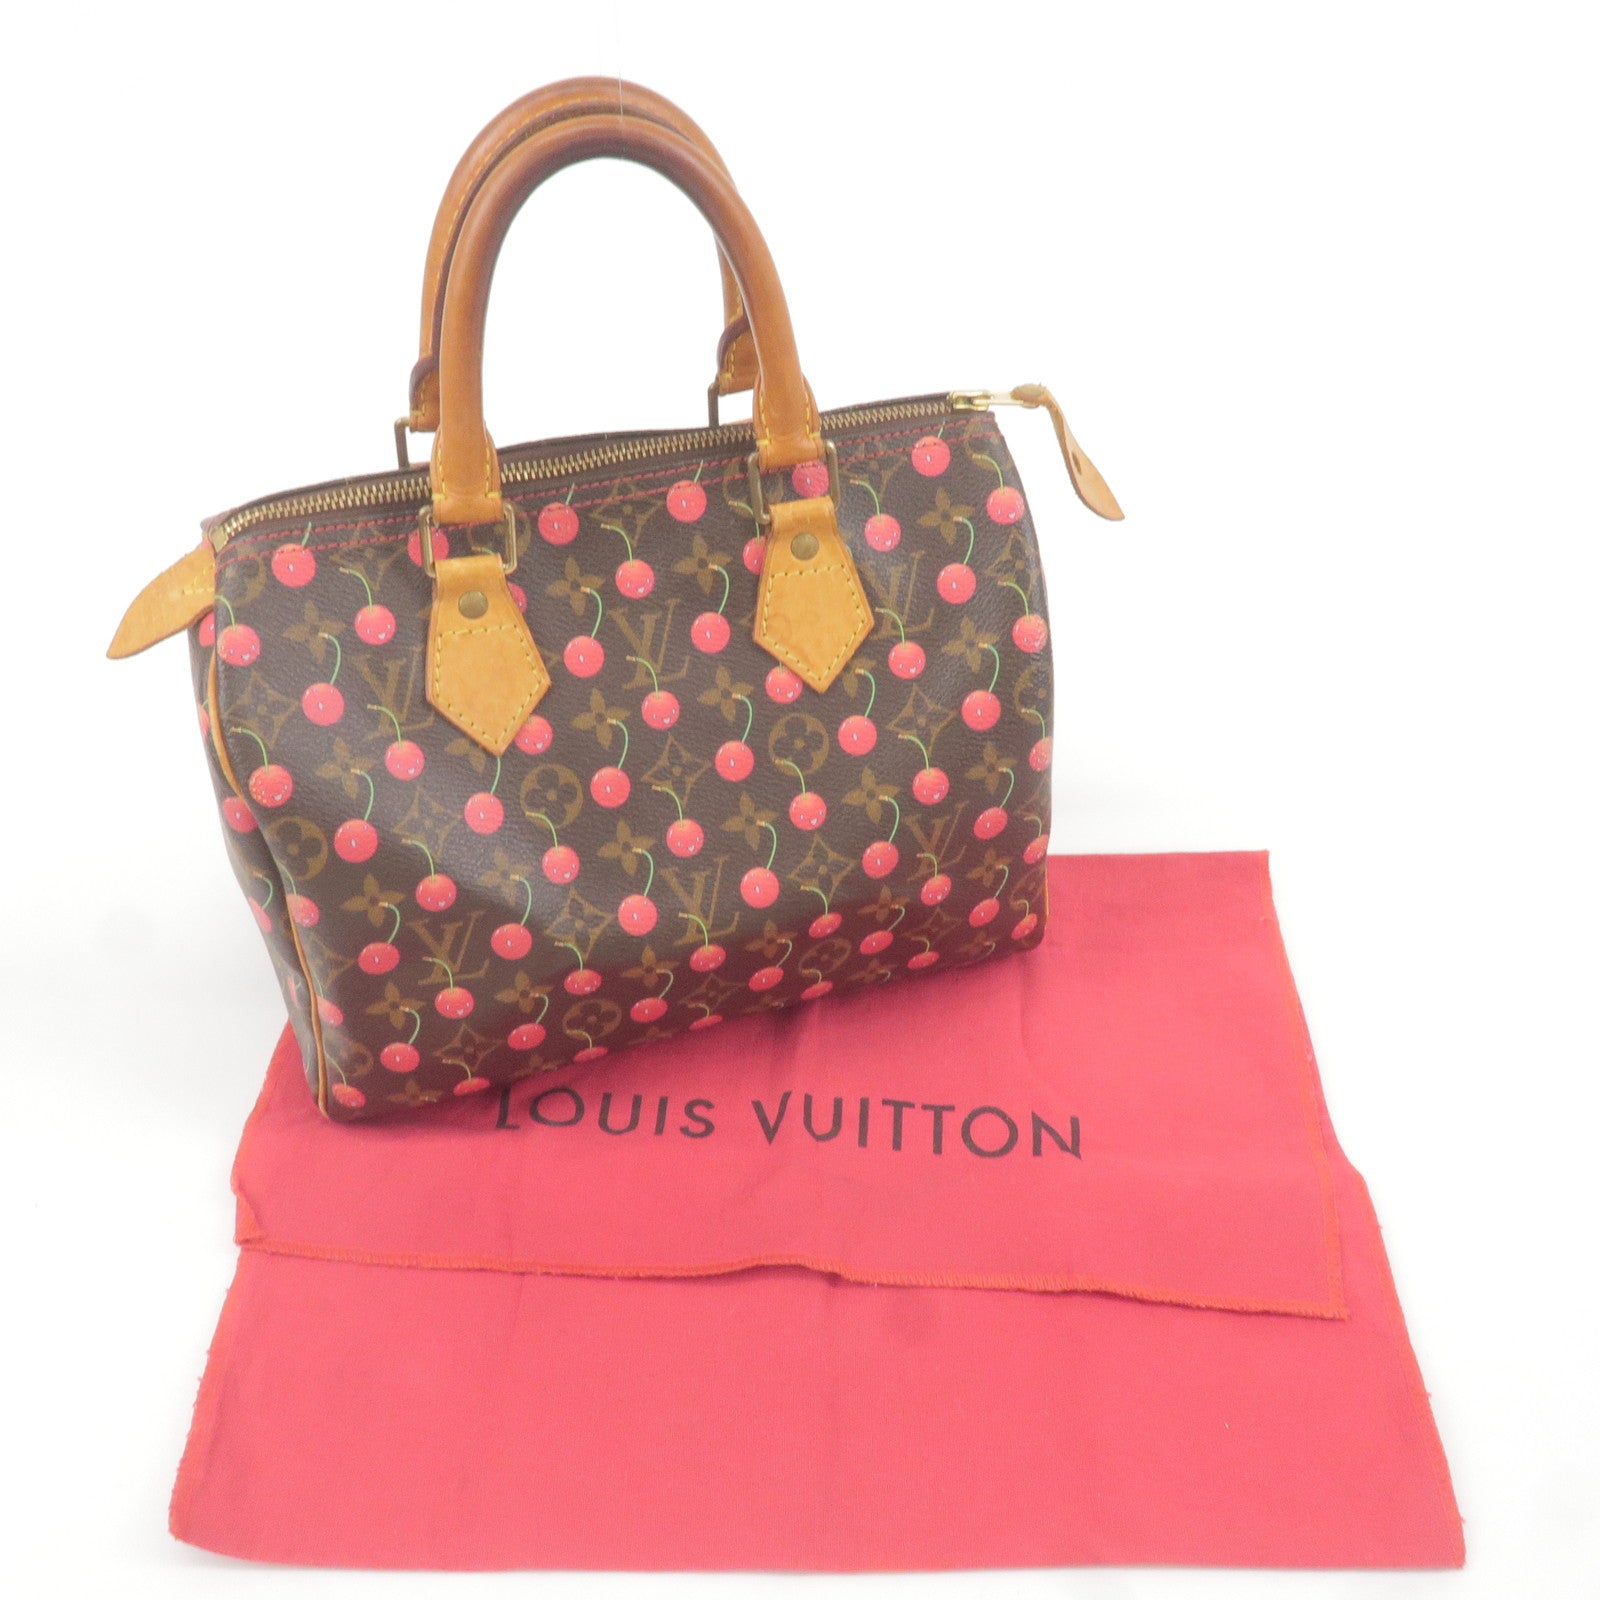 Louis-Vuitton-Monogram-Cherry-Speedy-25-Boston-Bag-M95009